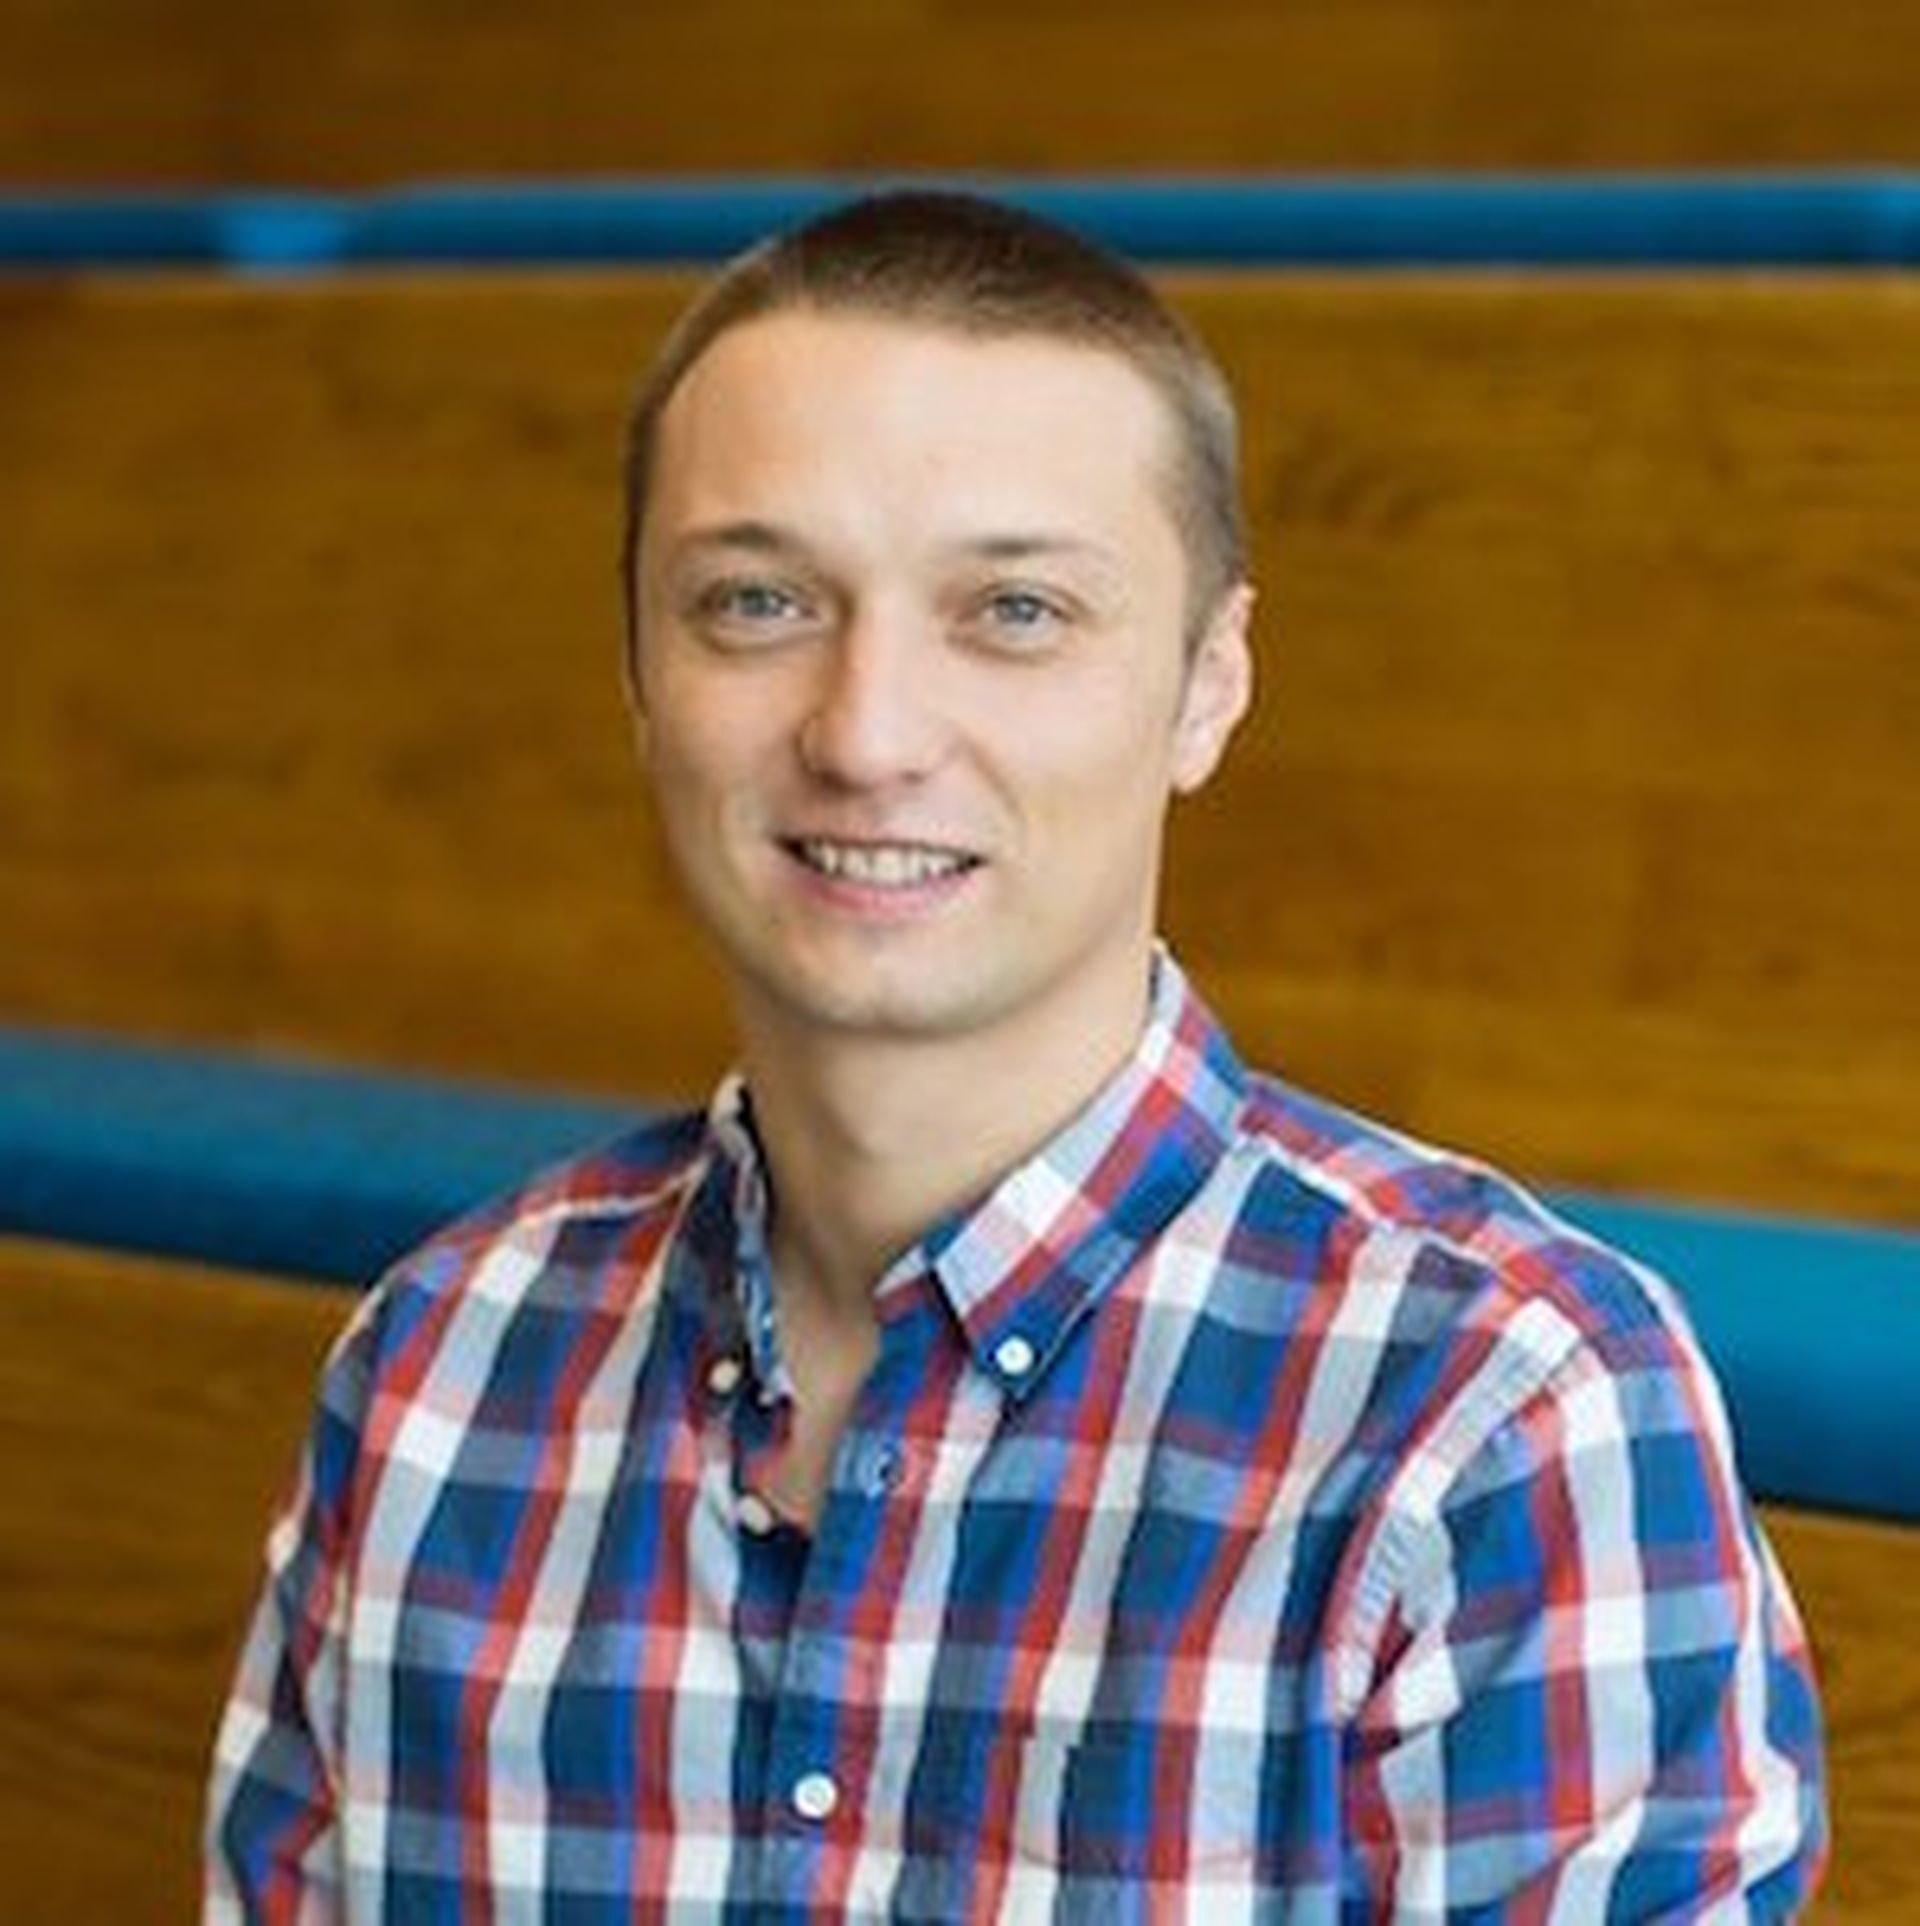 Malwarebytes CEO Marcin Kleczynski